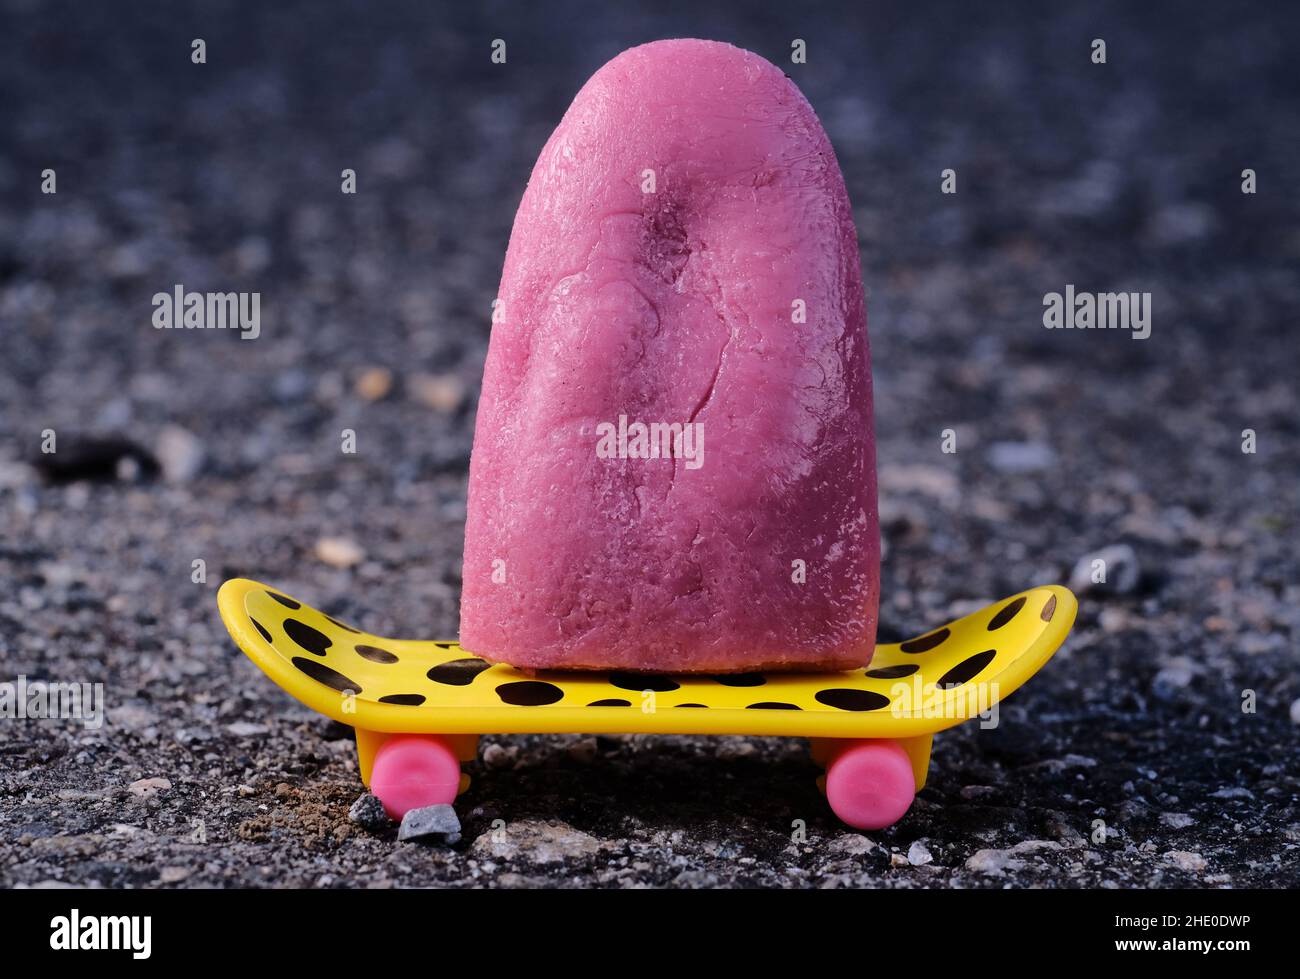 Ausdruck und Sprichwort Zungenverdrehung wird visuell dargestellt, wie eine Zunge auf einem Skateboard reitet Stockfoto